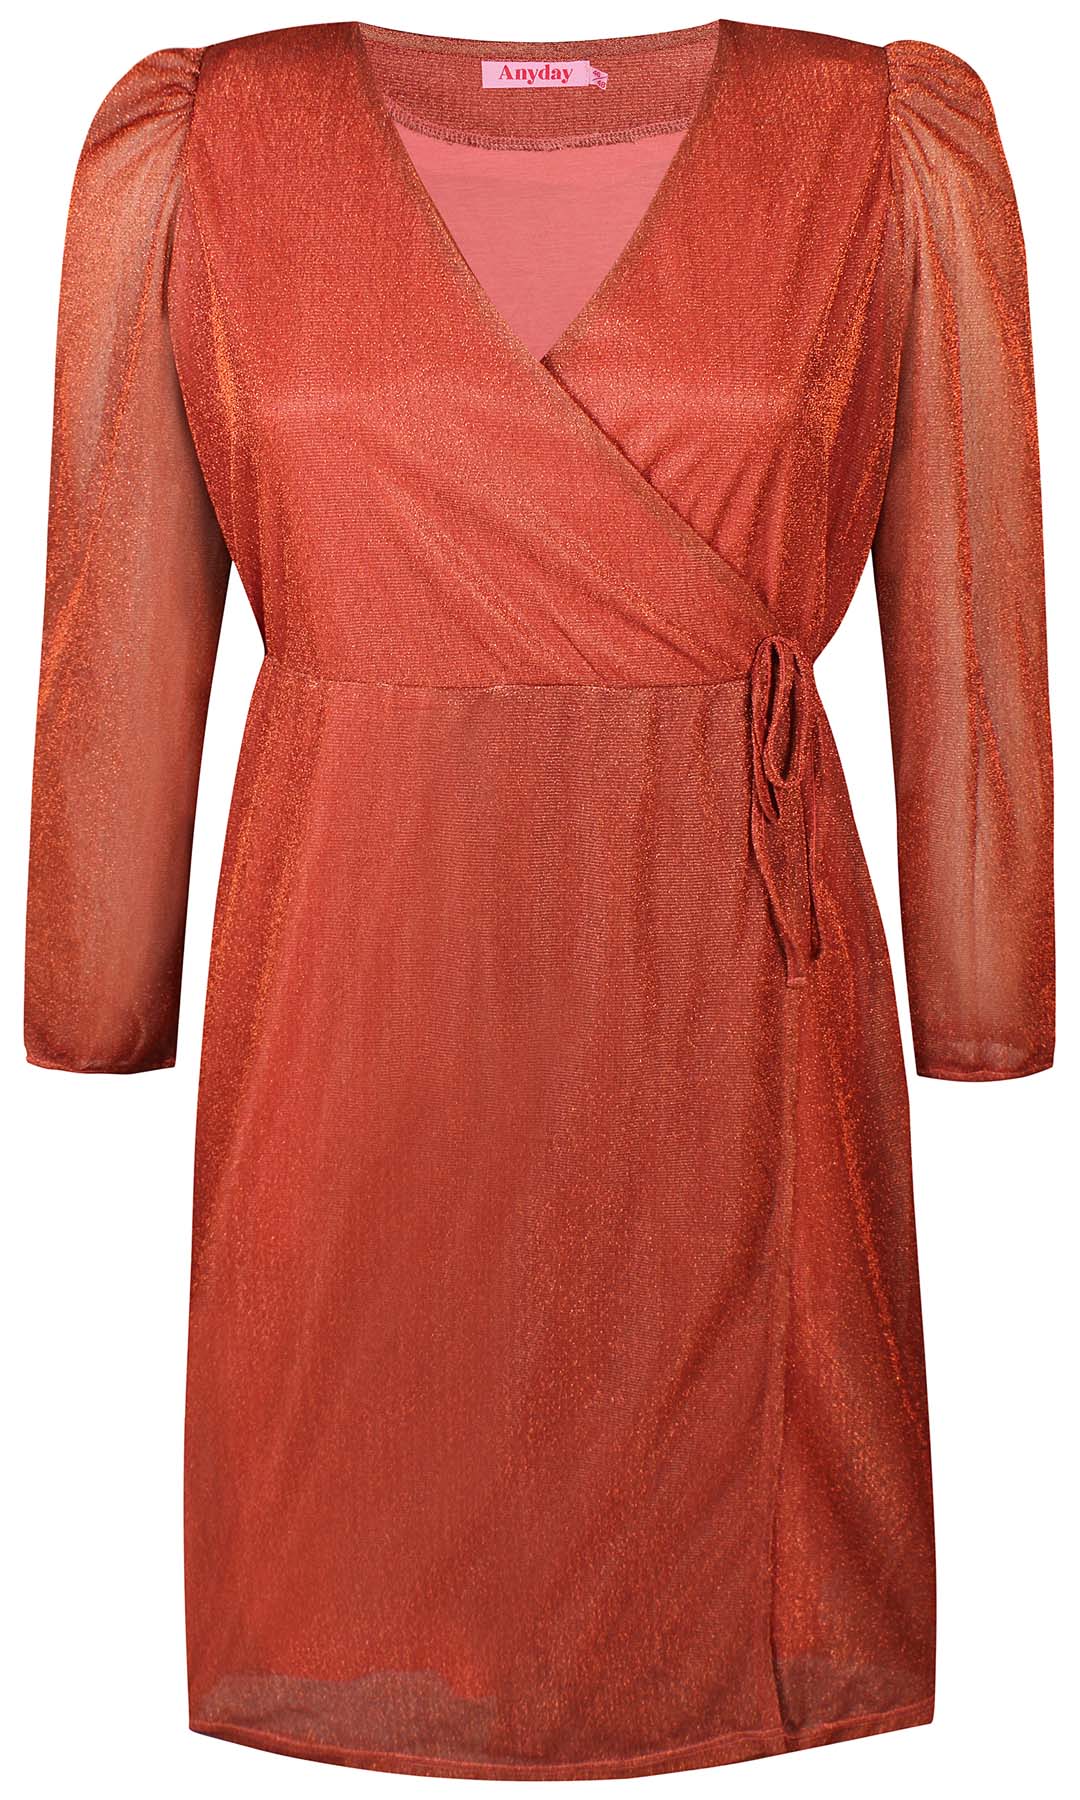 Liv 070 - Dress - Orange